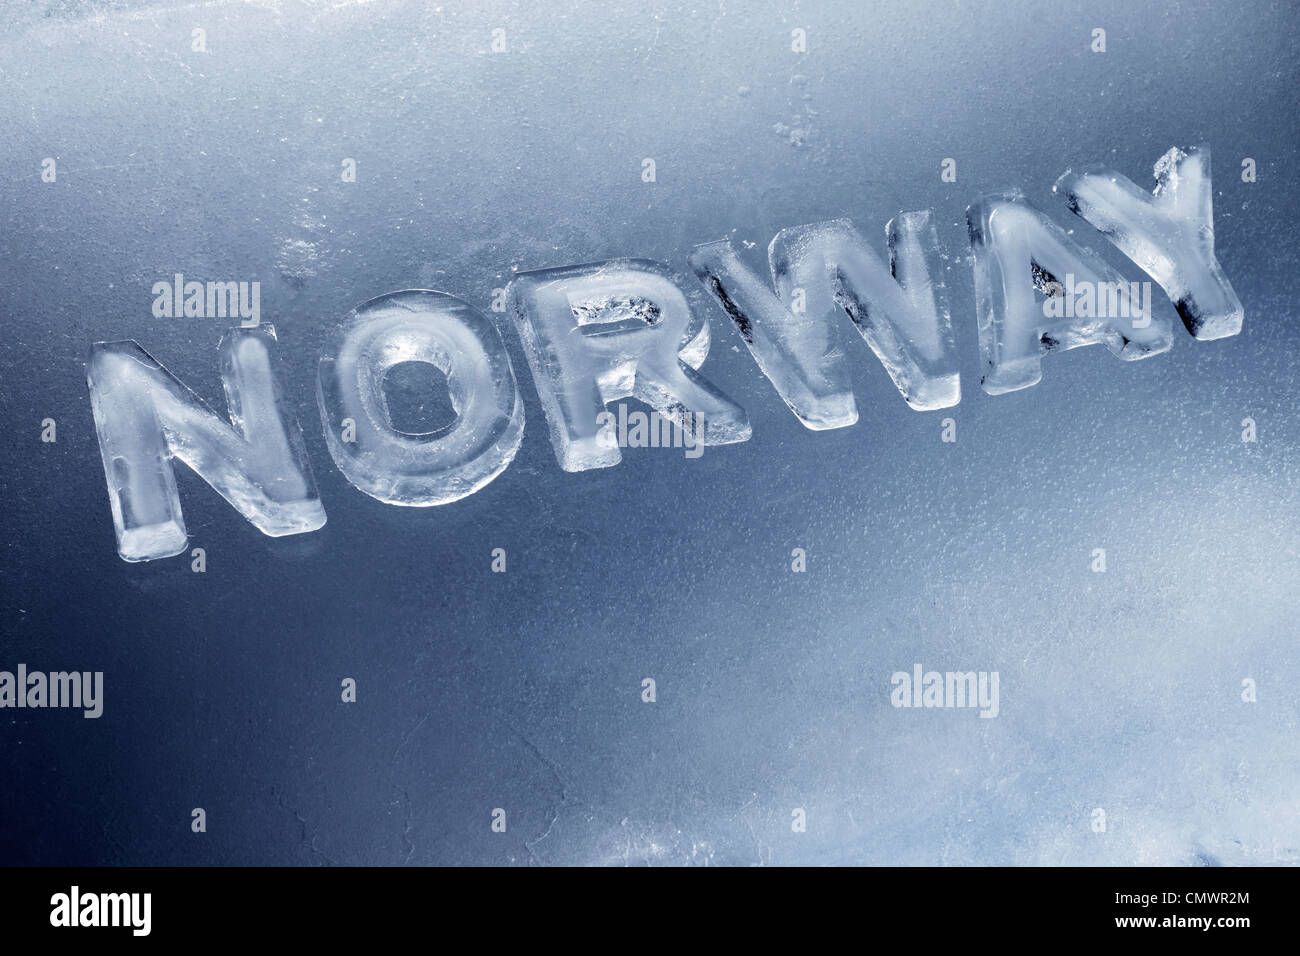 Wort-Norwegen mit Buchstaben geschrieben hergestellt aus echtem Eis. Stockfoto